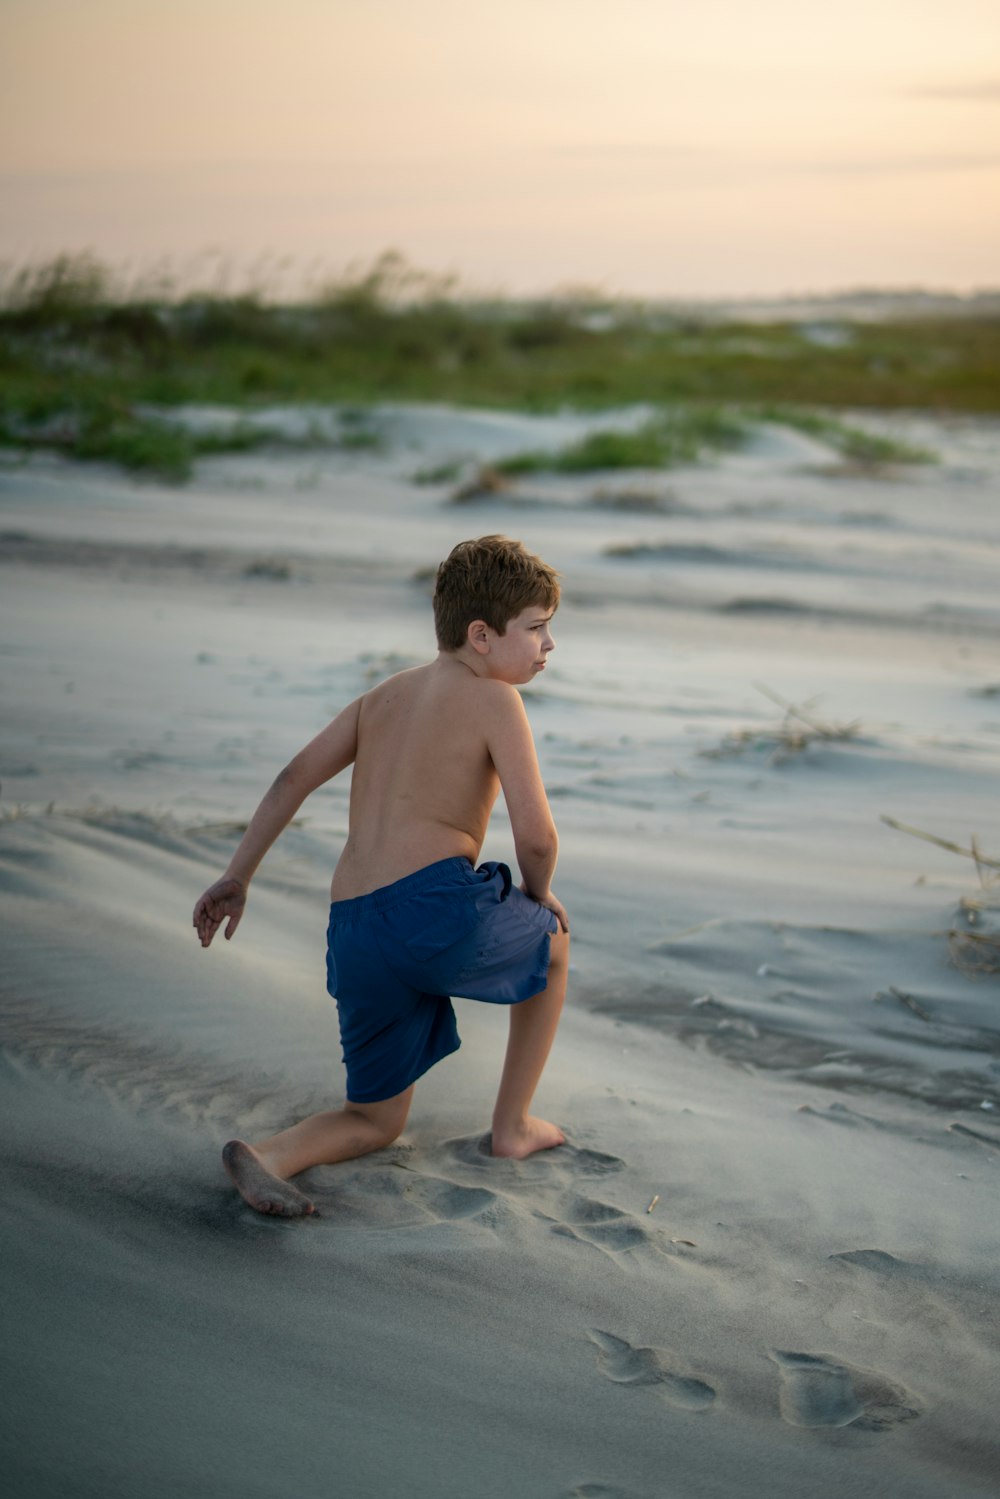 ビーチの砂浜で遊んでいる少年